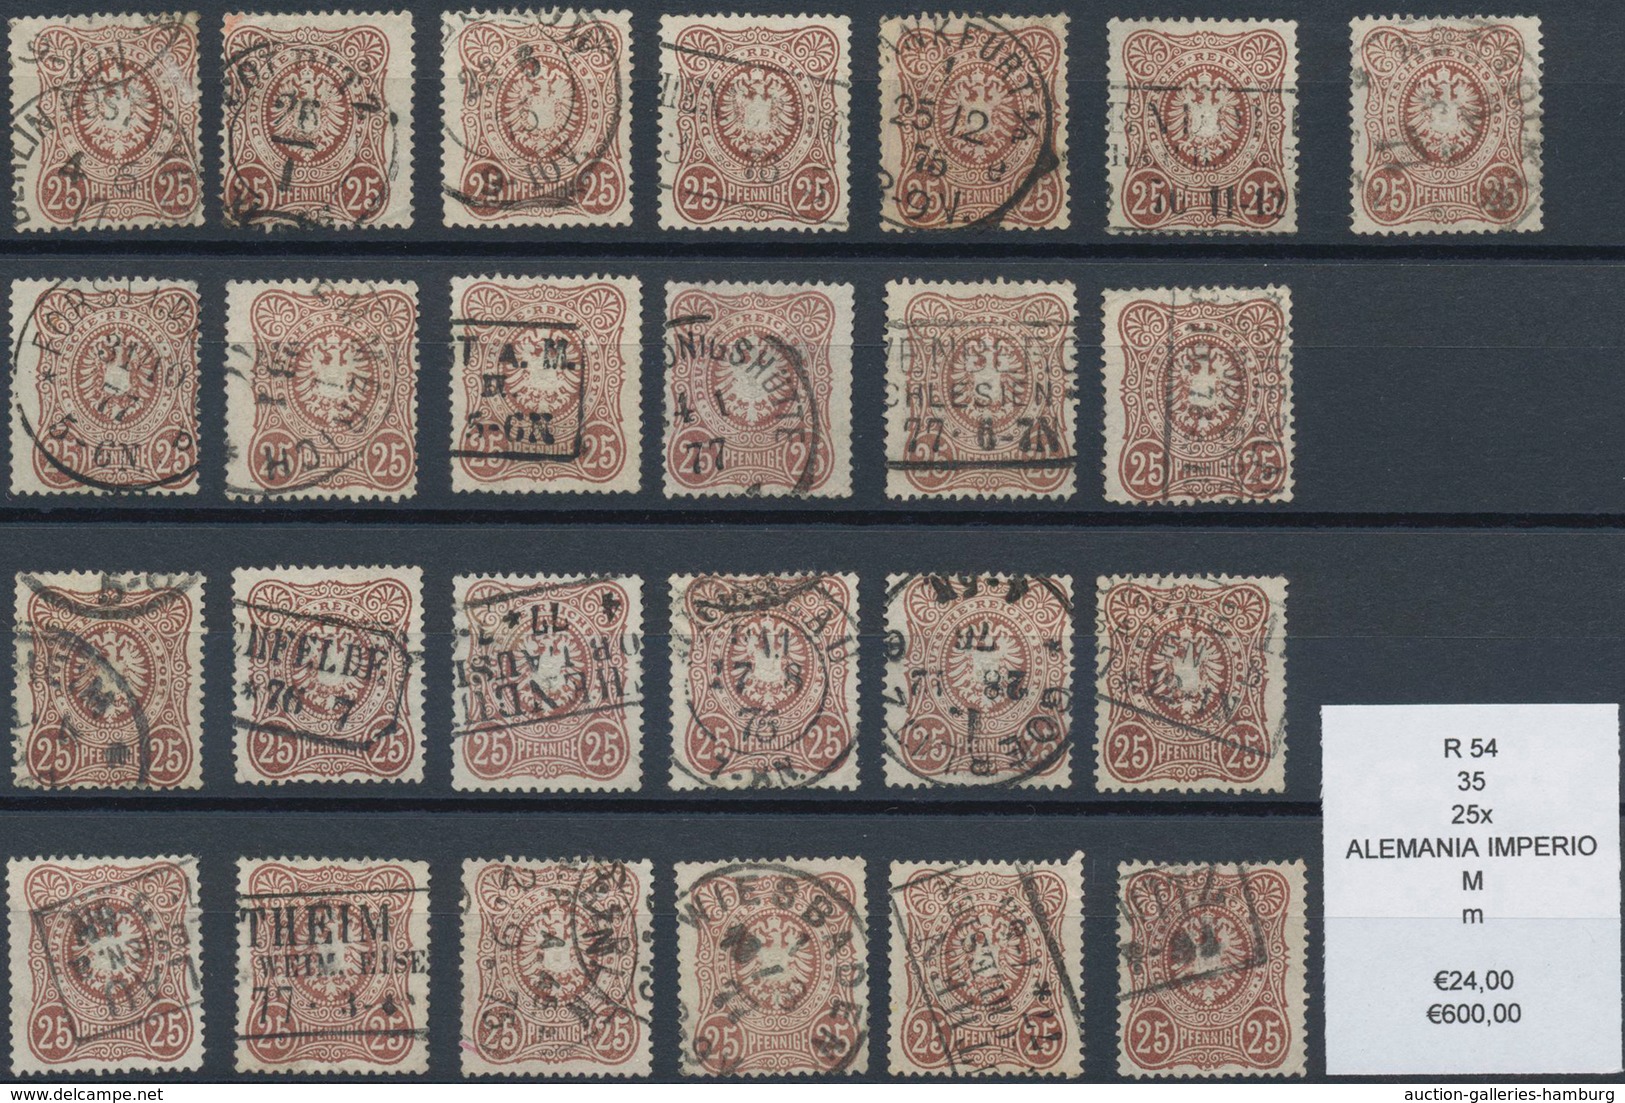 Deutsches Reich - Pfennige: 1875/79, 25 und 50 Pfennige, Engrospartie für den Spezialisten: ca. 89x